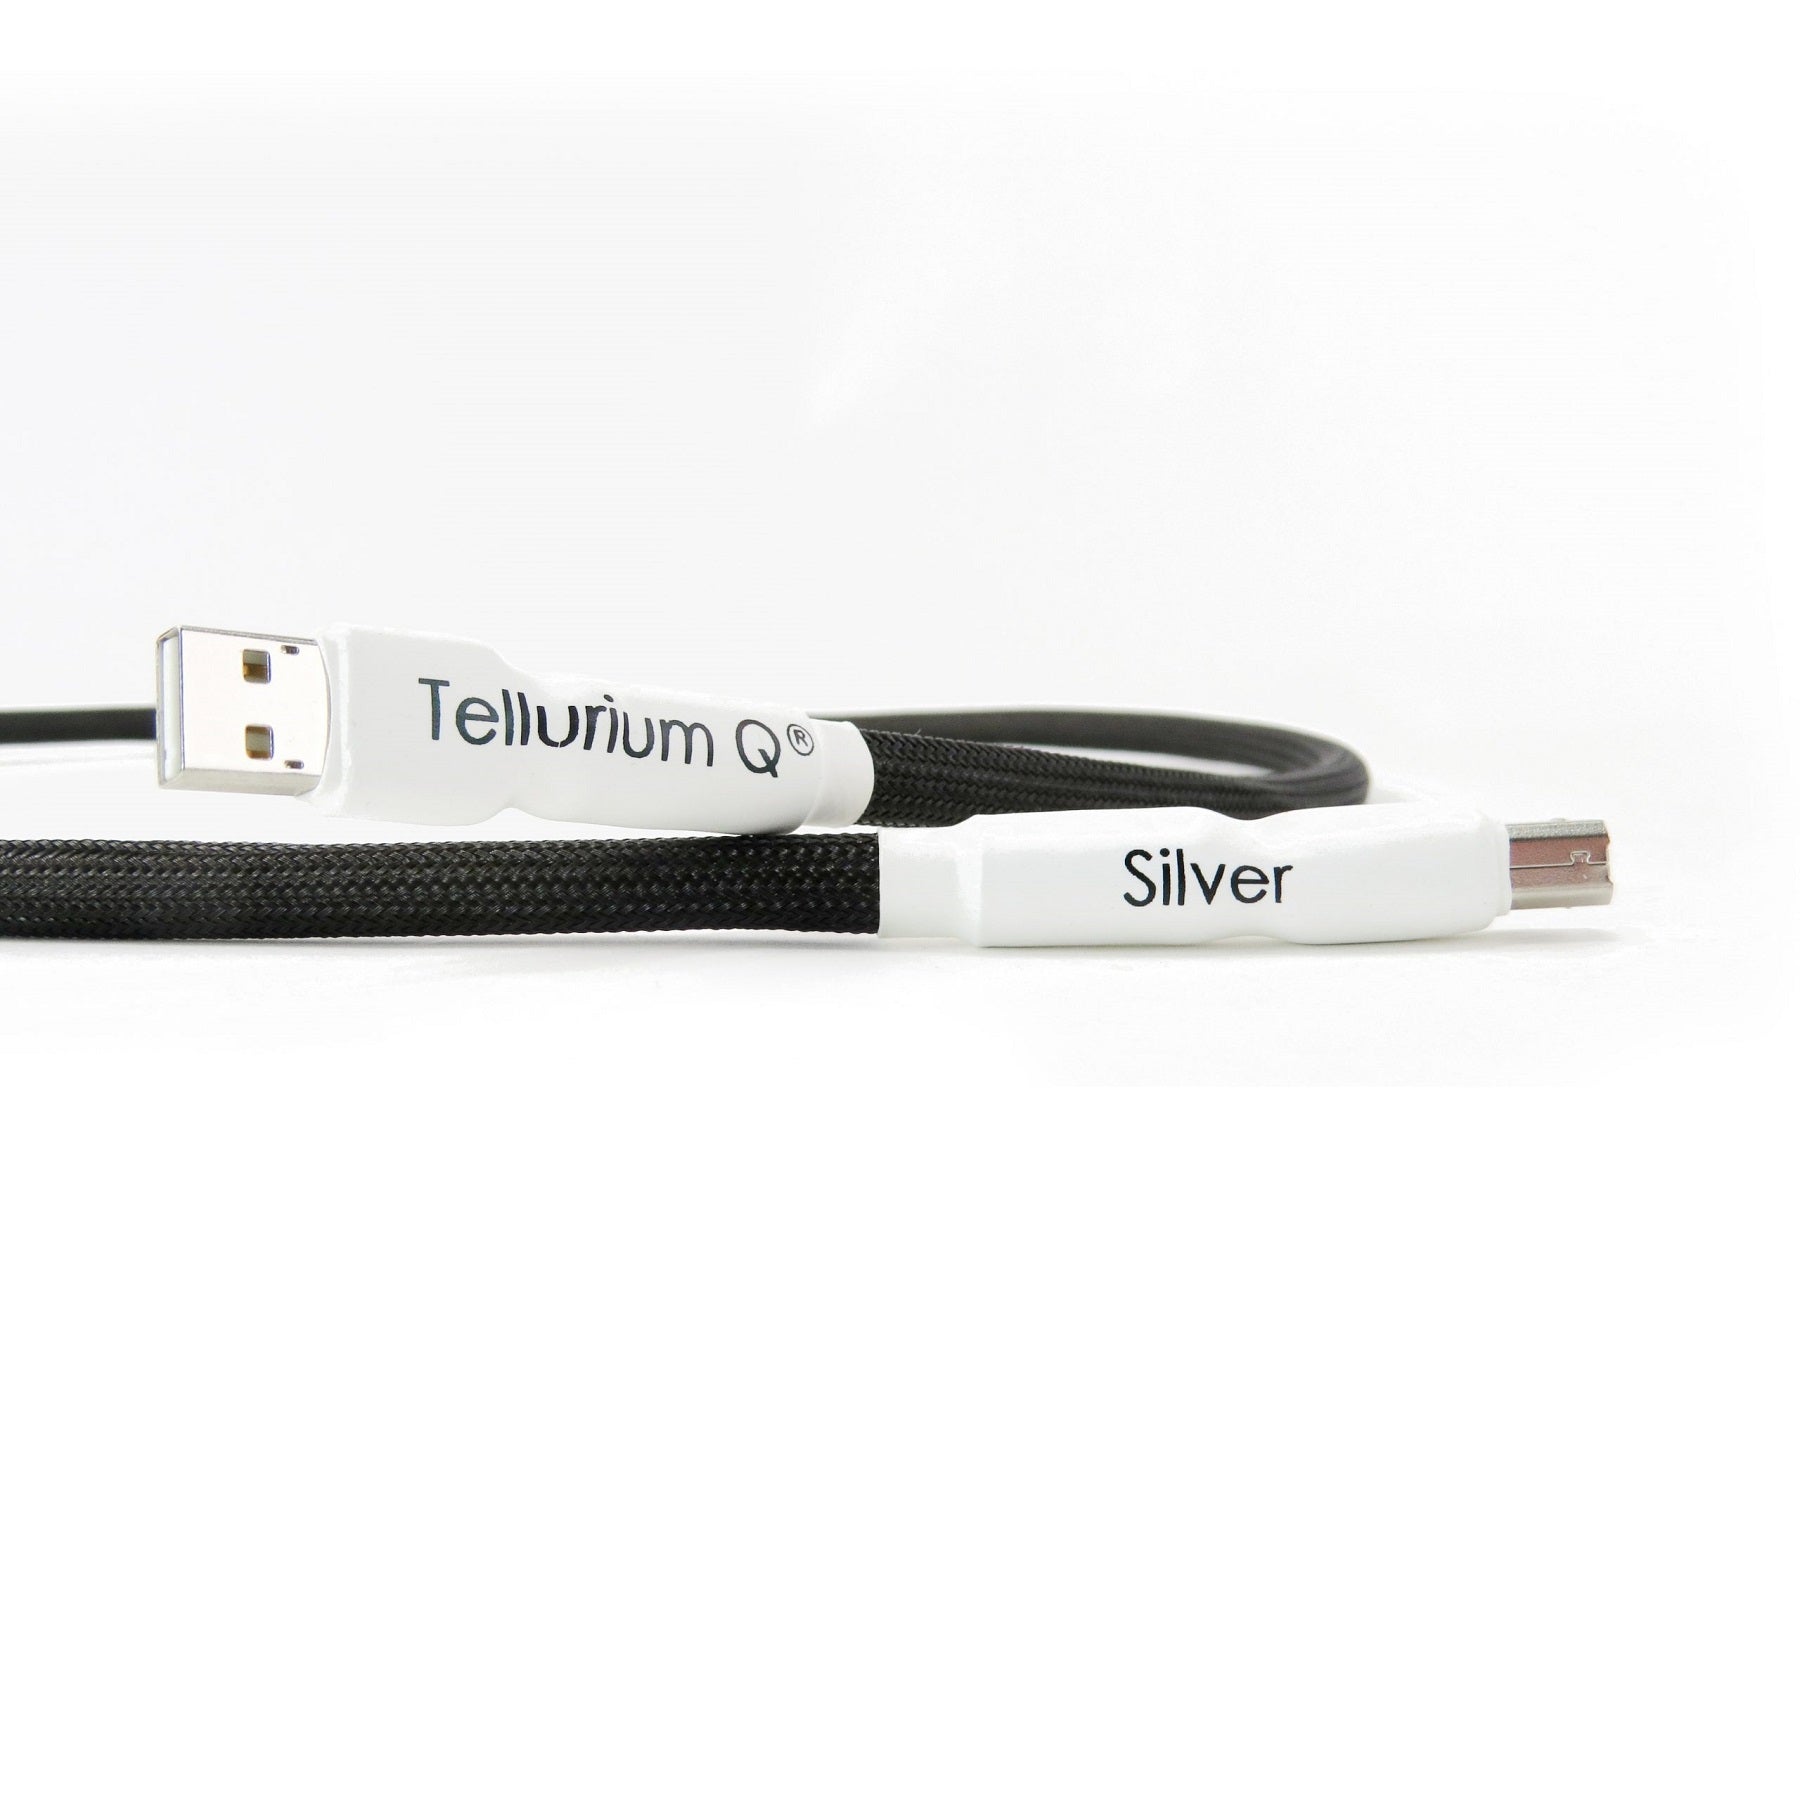 Tellurium Q Silver USB Cable